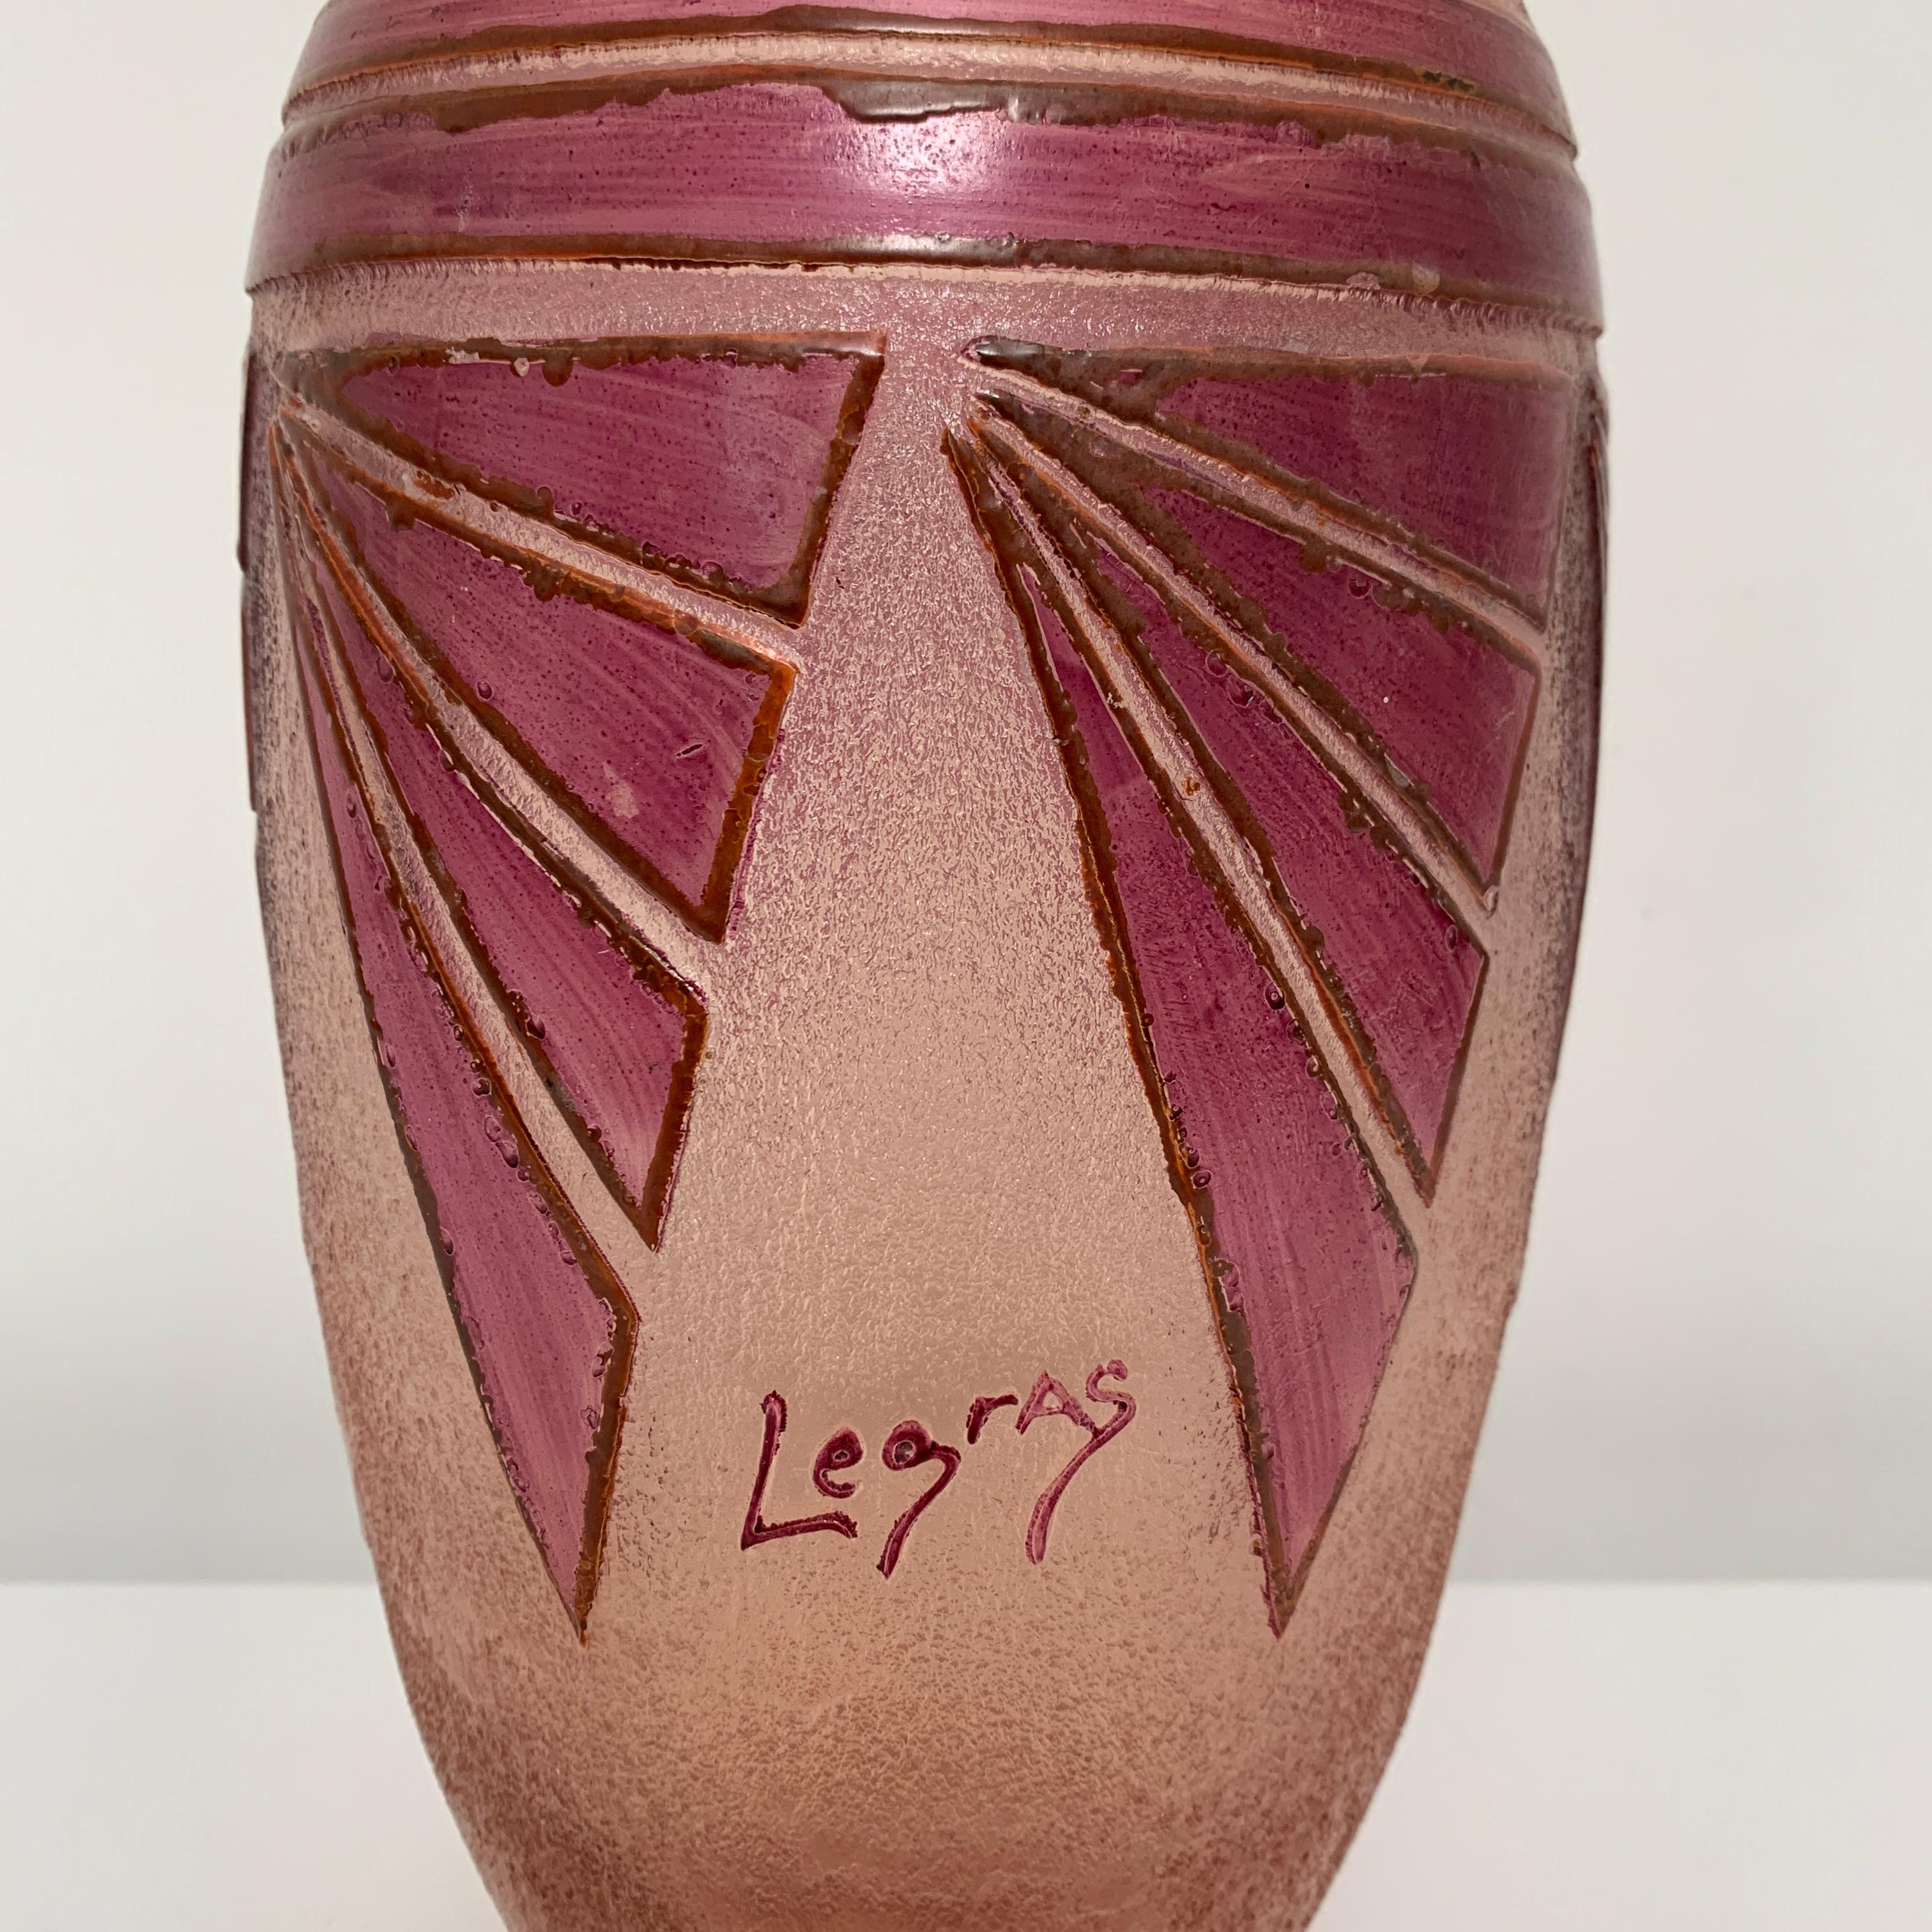 Vase de la manufacture de François-Théodore Legras. Décor peu vu de la période Art Déco de la manufacture (1914-1928). Le corps a été dégagé à l'acide pour faire apparaitre les motifs Art Déco rehaussé par un ajout de peinture émaillée.

Hauteur